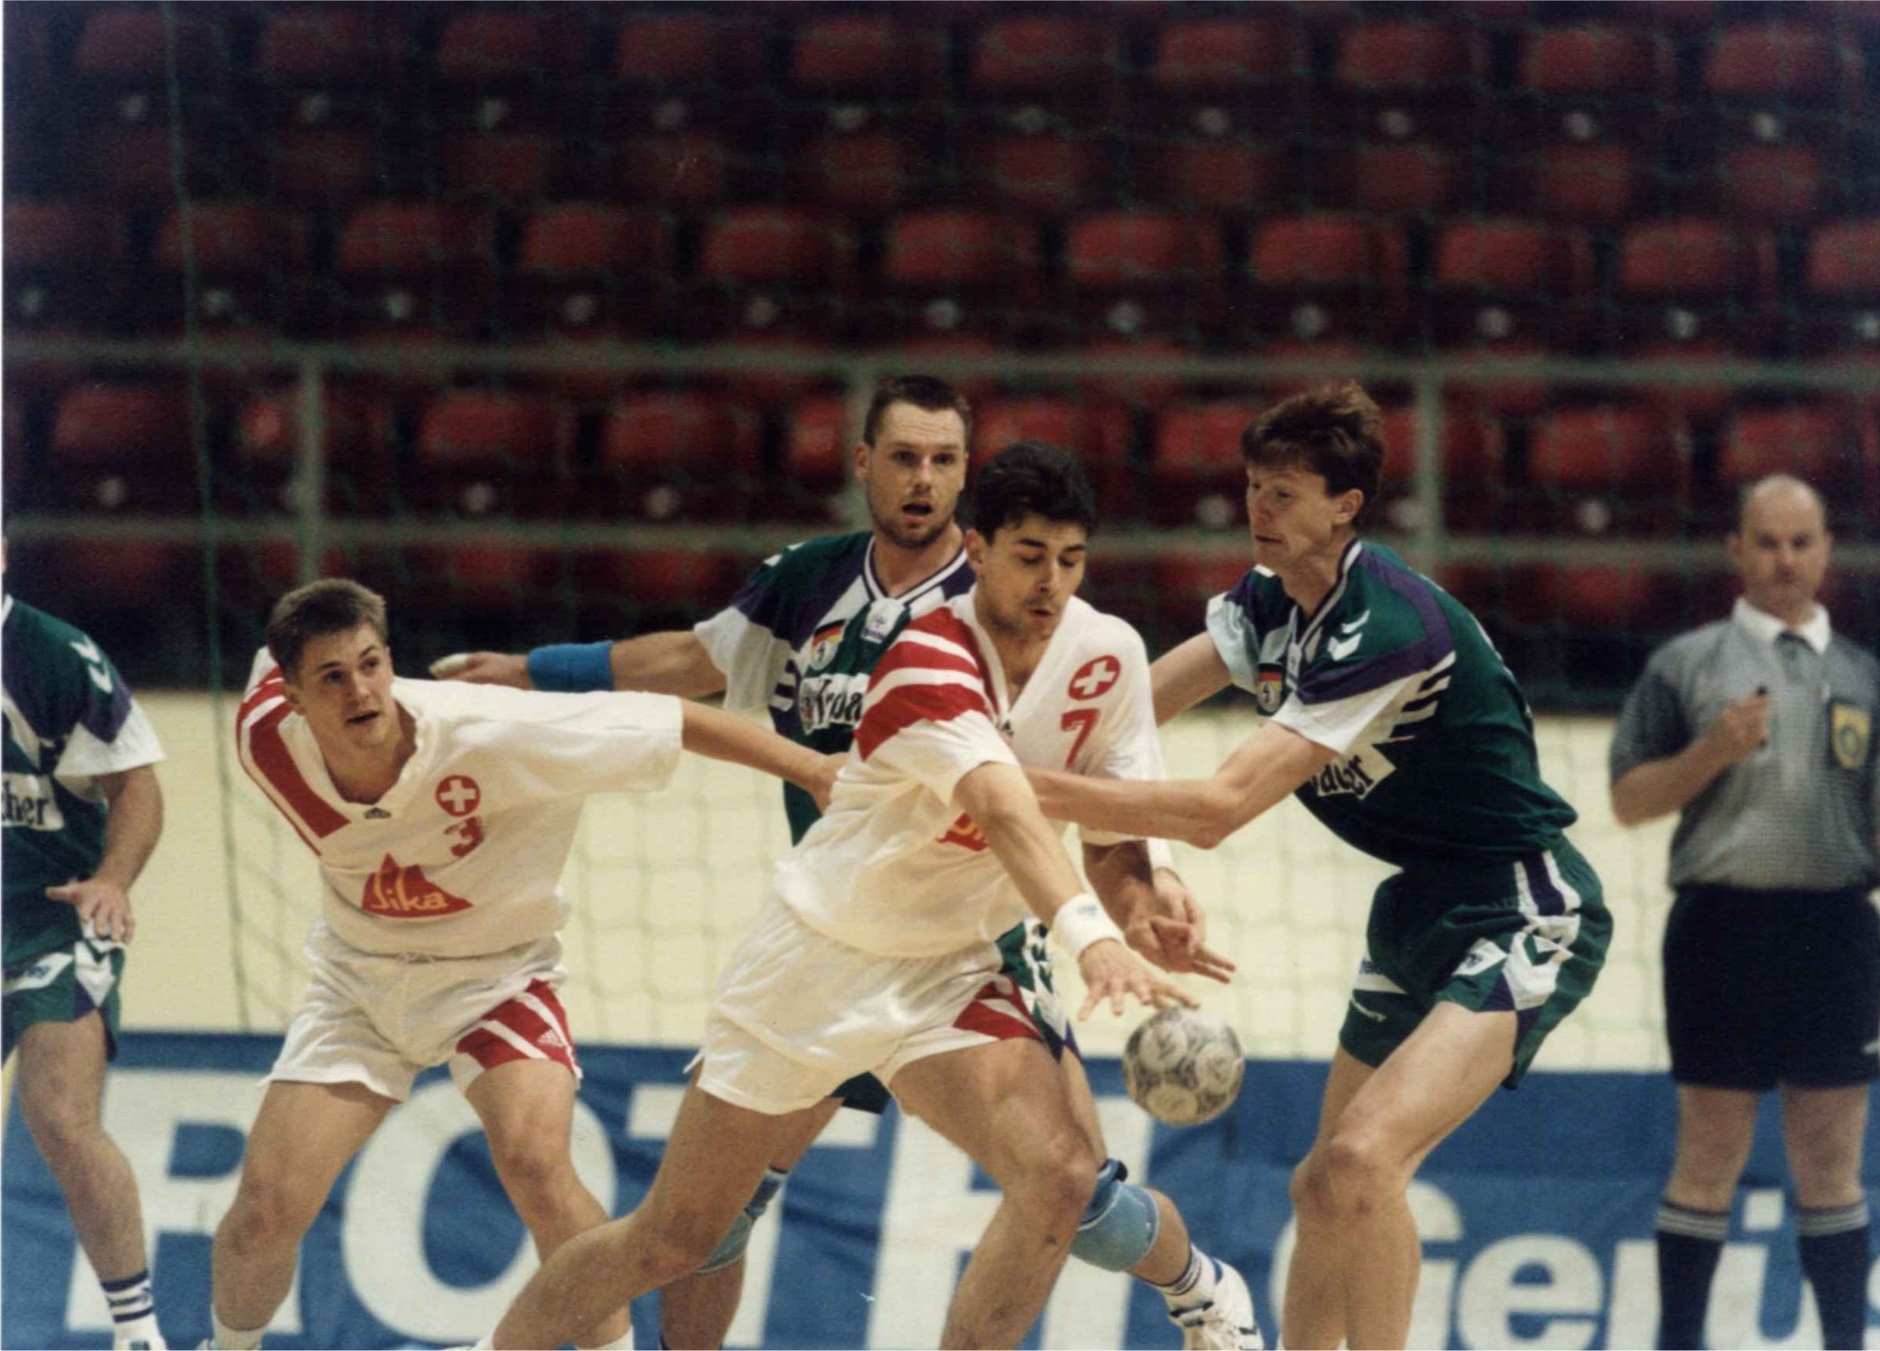 1995-11-03 EM-Quali SUI-GER 23-16 in Basel St. Jakobhalle - 3 Daniel Spengler, 7 Roman Brunner.jpg